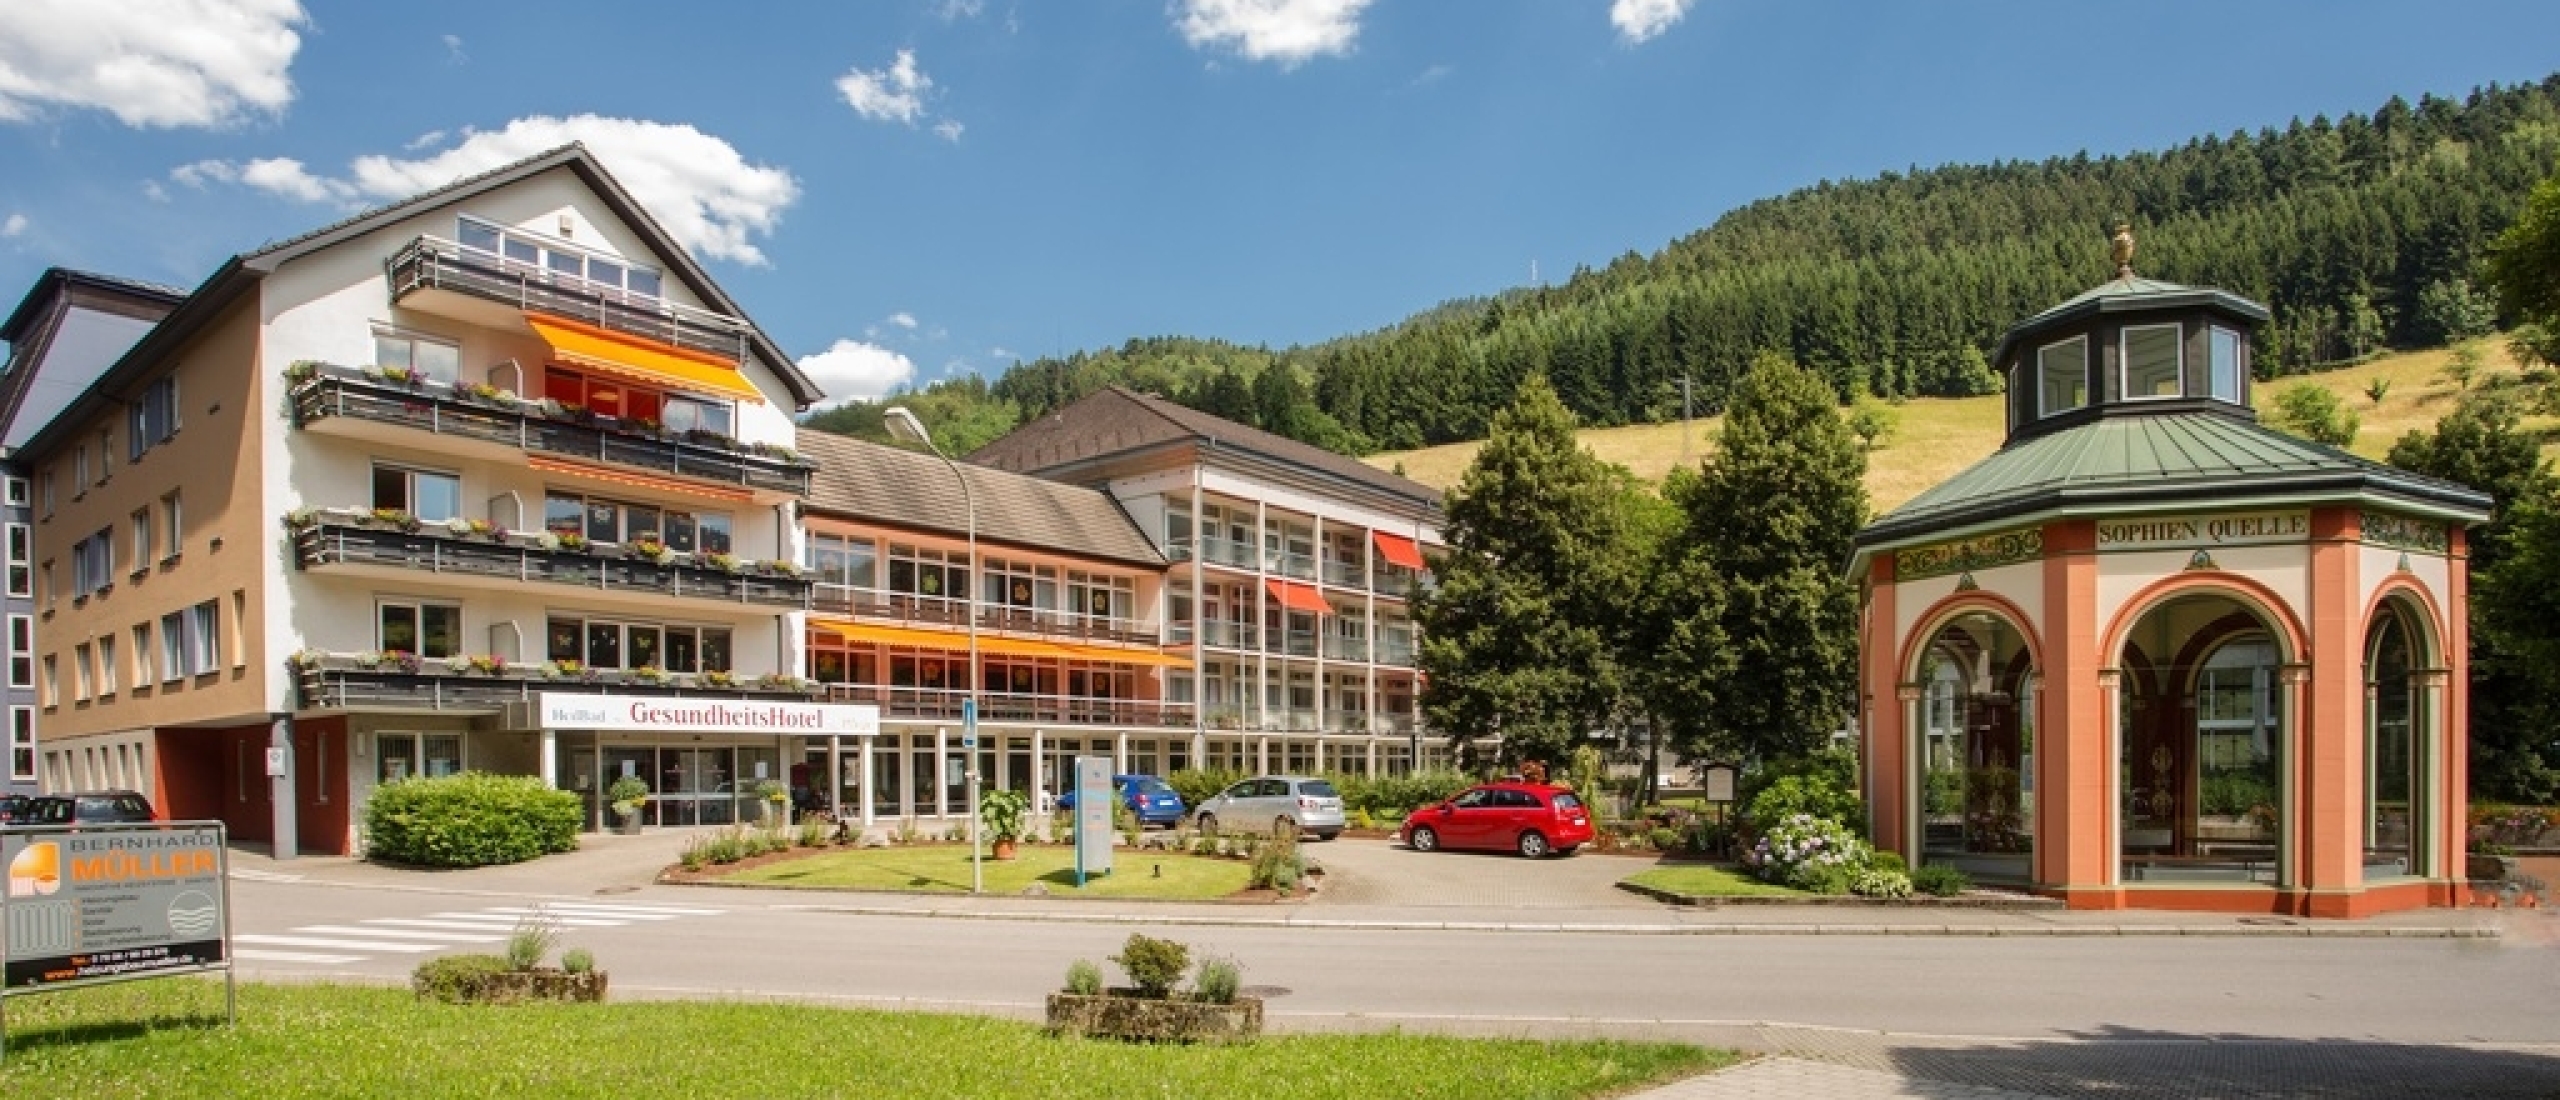 Verzorgd op vakantie in Duits hotel als mindervalide